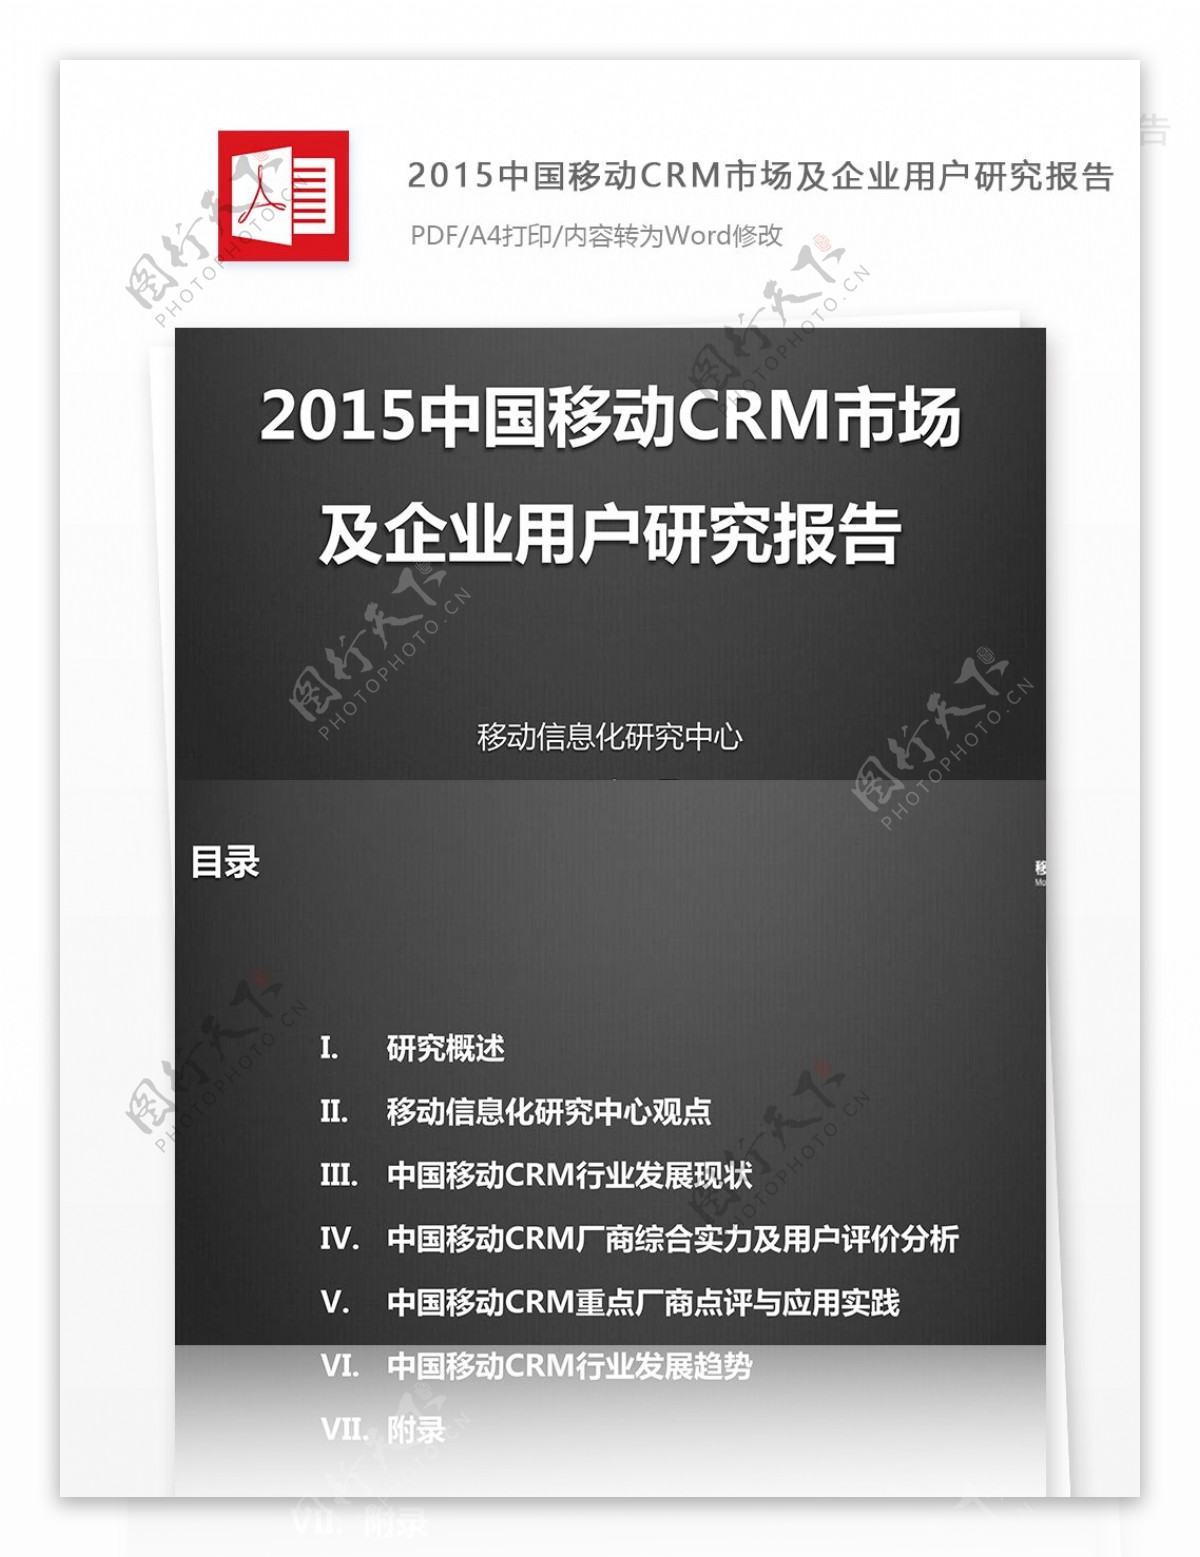 中国移动CRM市场及企业用户研究报告